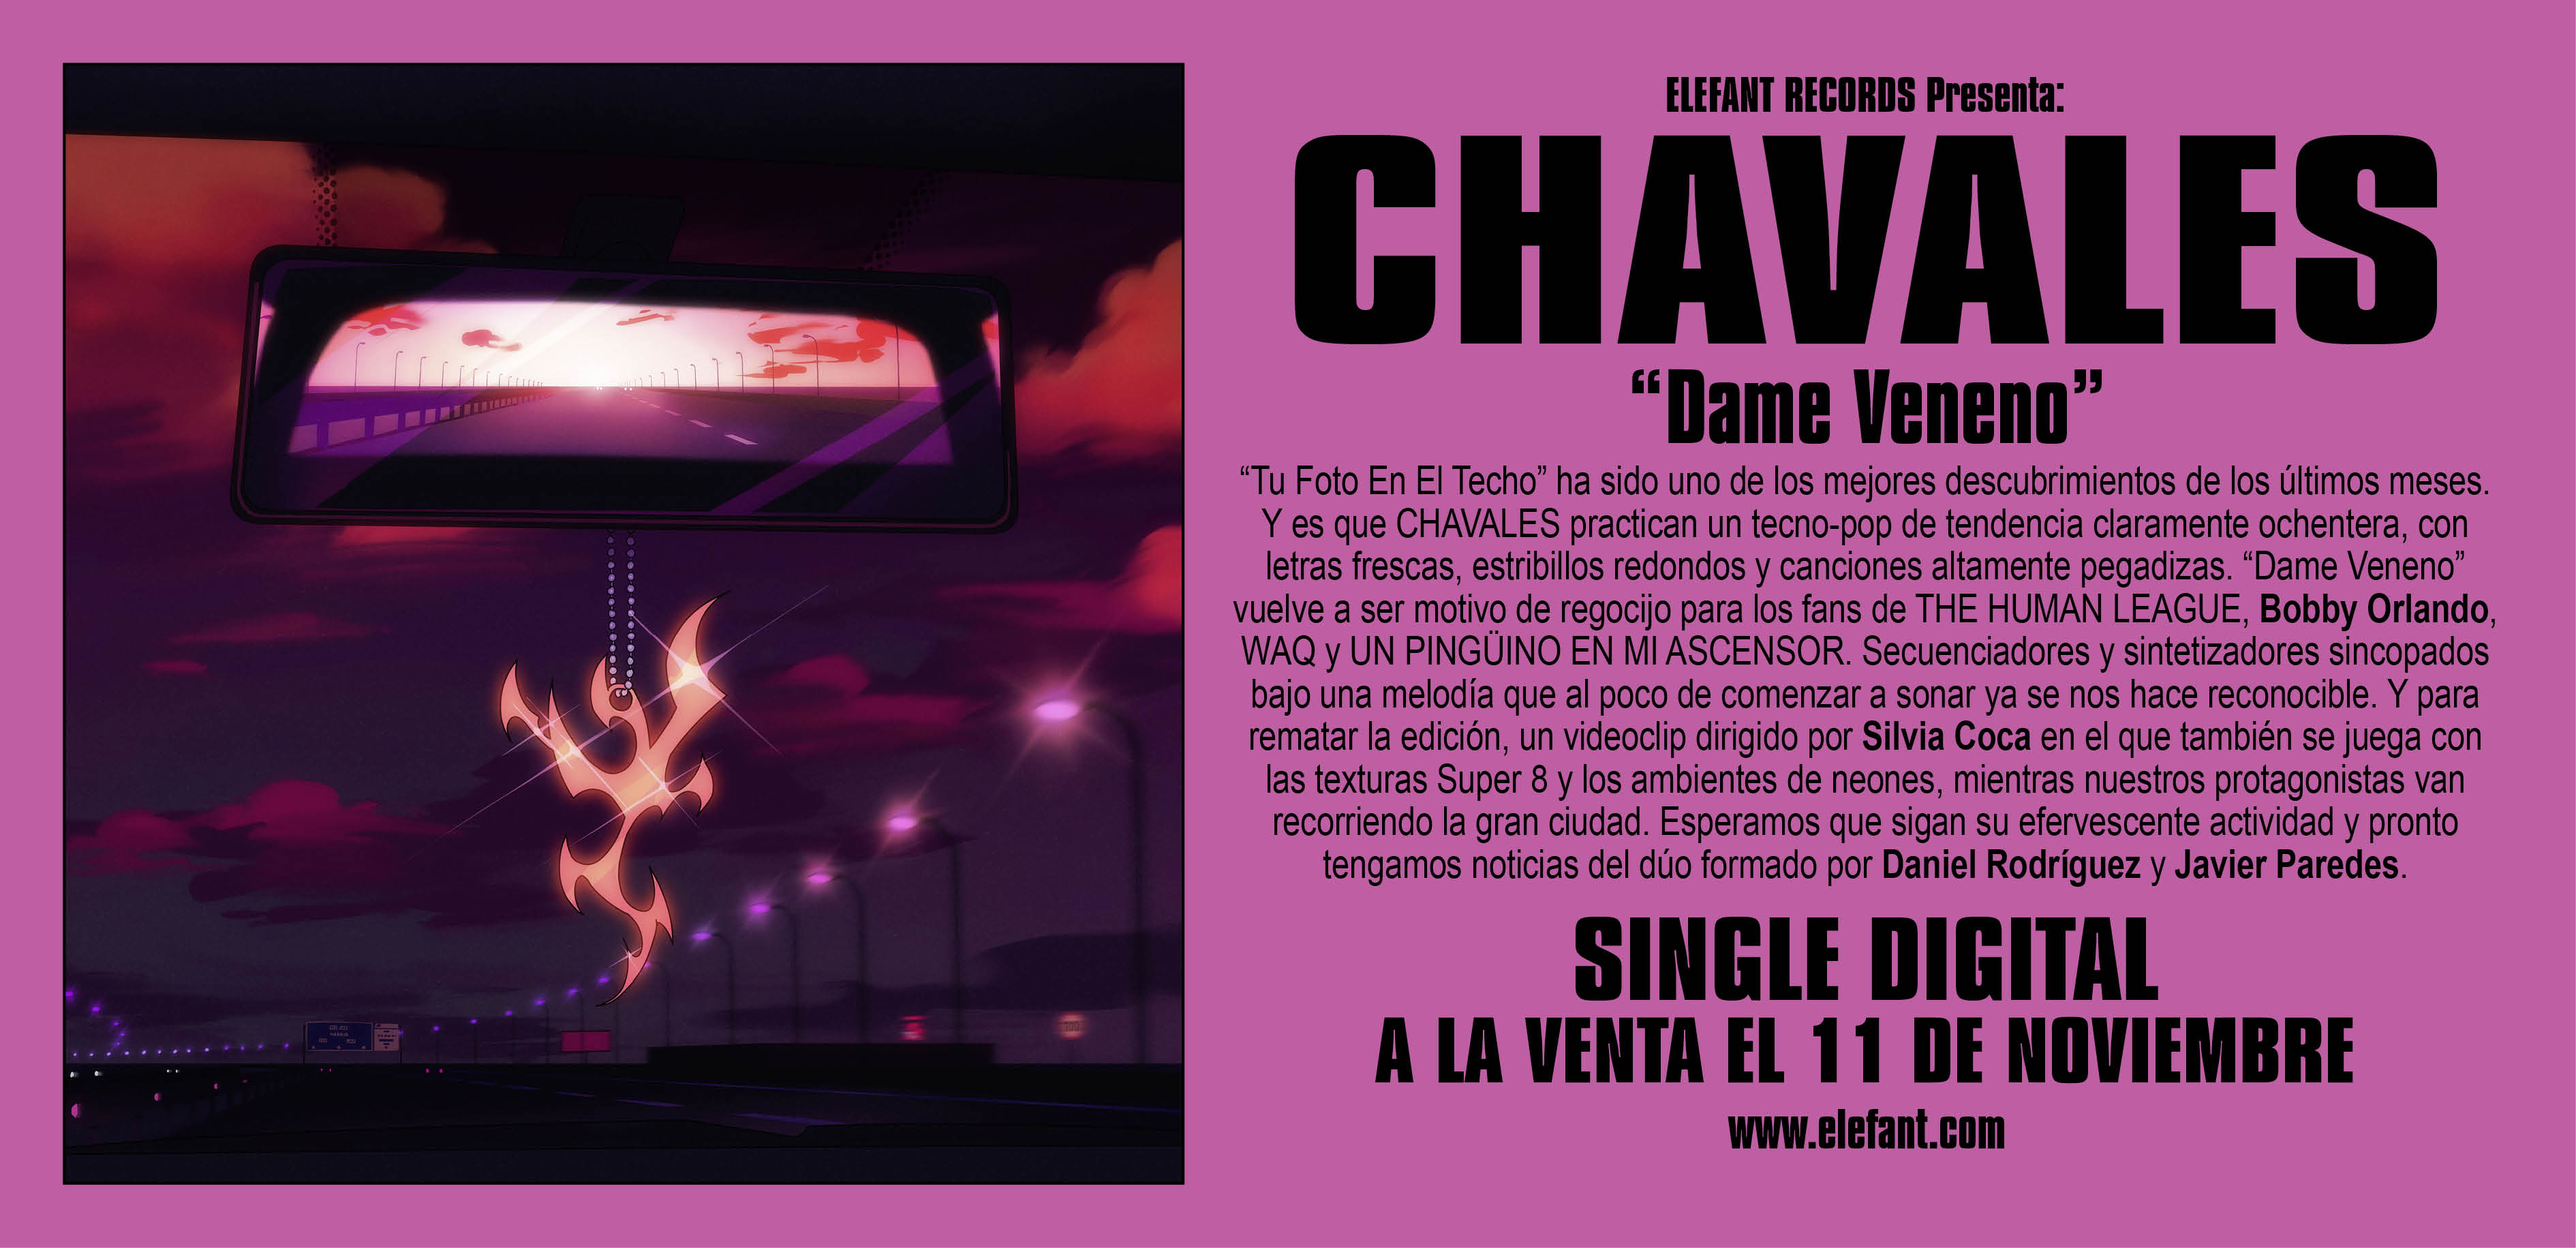 Chavales "Dame Veneno" Digital Single